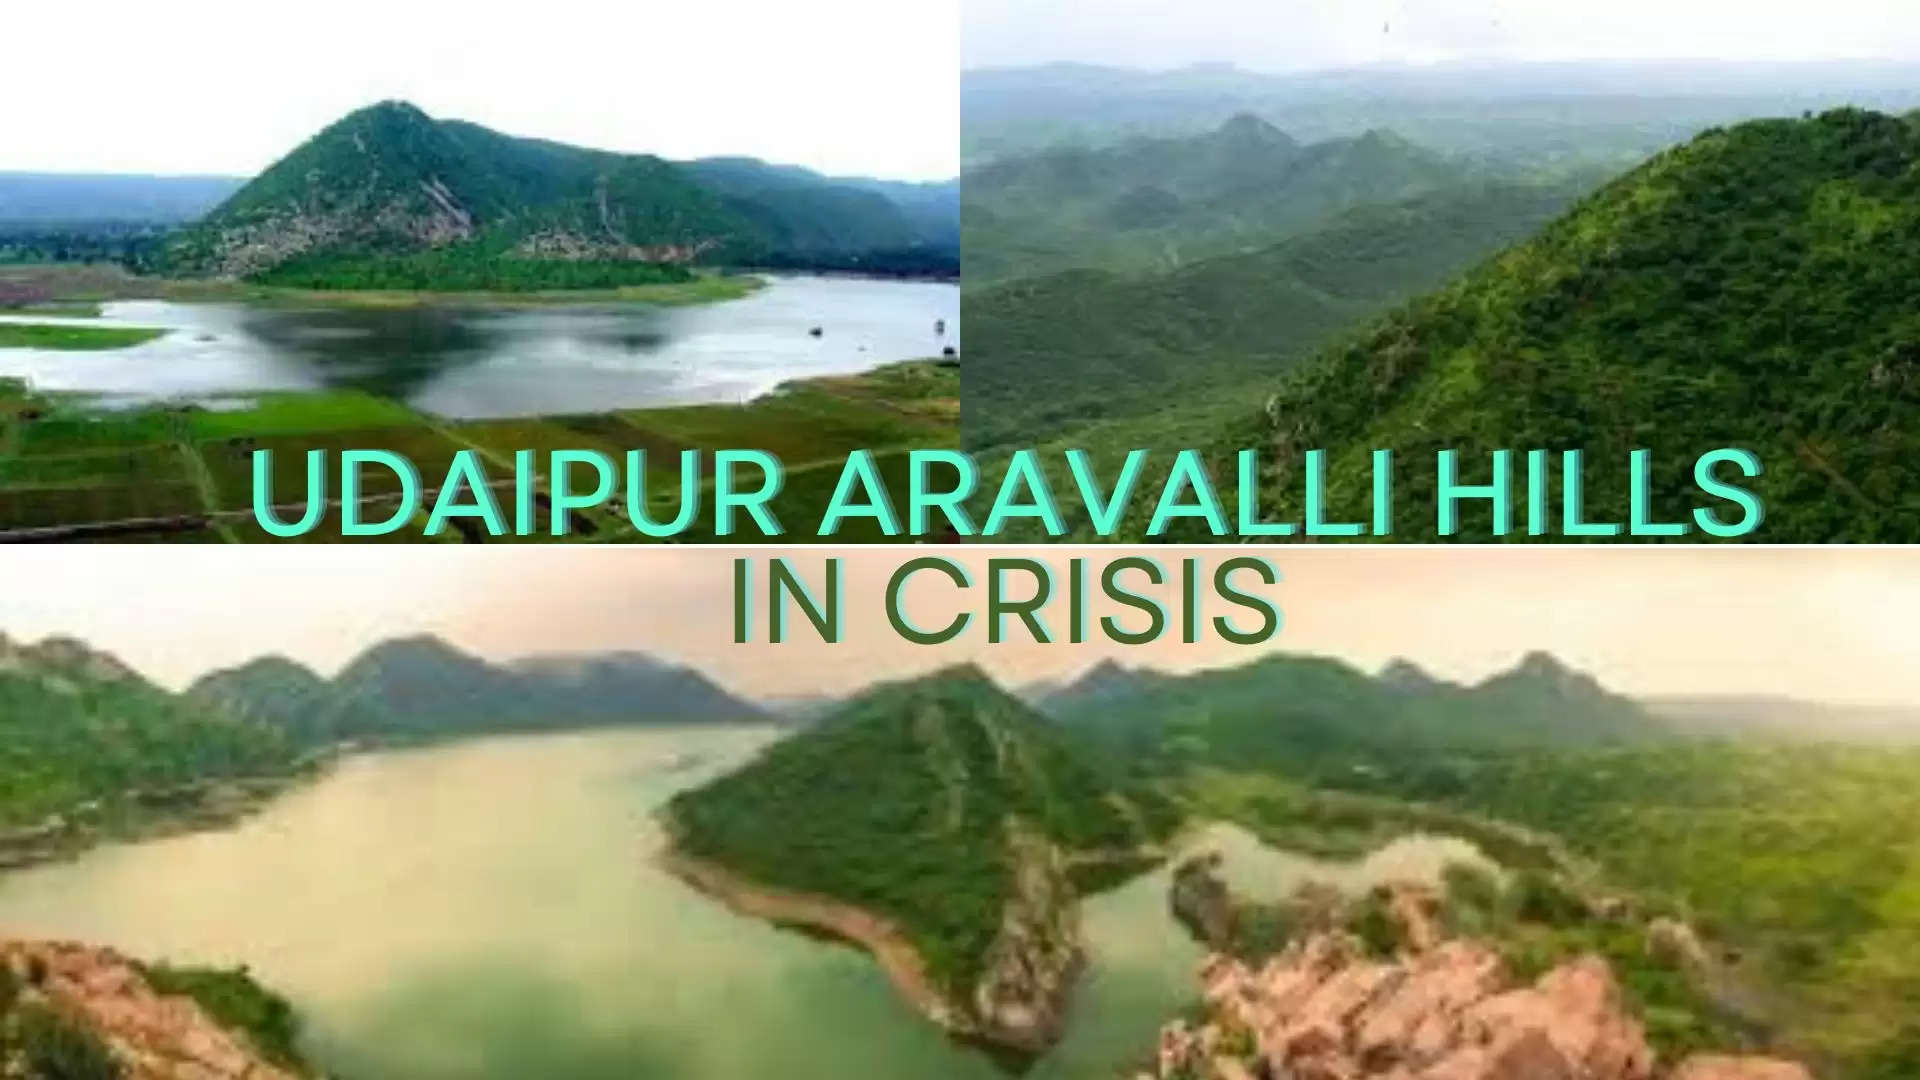 Udaipur Aravalli Hills